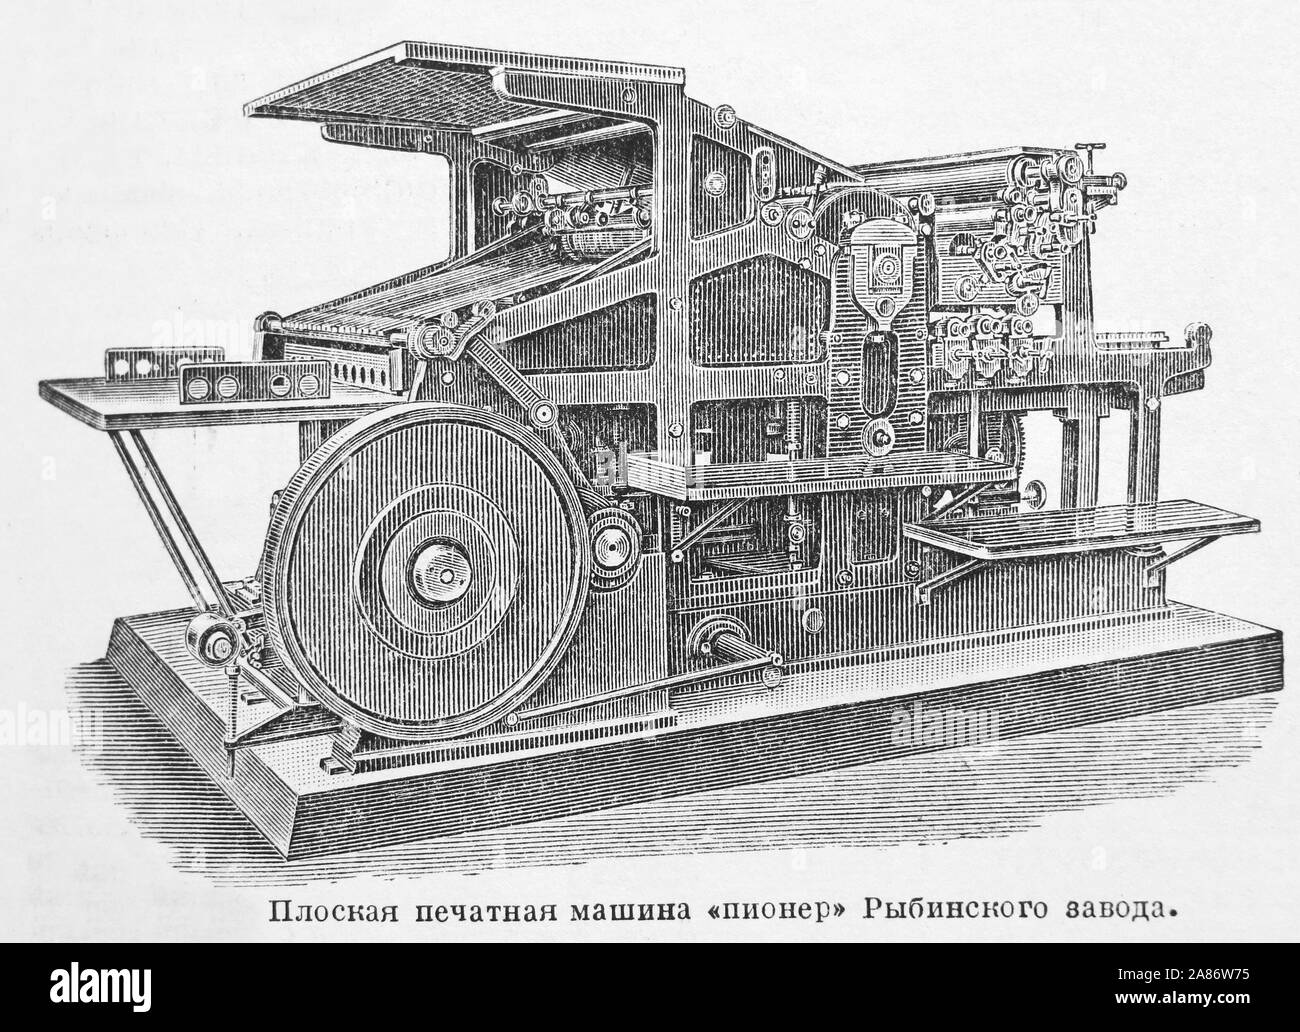 Flache Druckmaschine - Pionier der Rybinsk Pflanze, Russischen Reiches. Gravur des 19. Jahrhunderts. Stockfoto